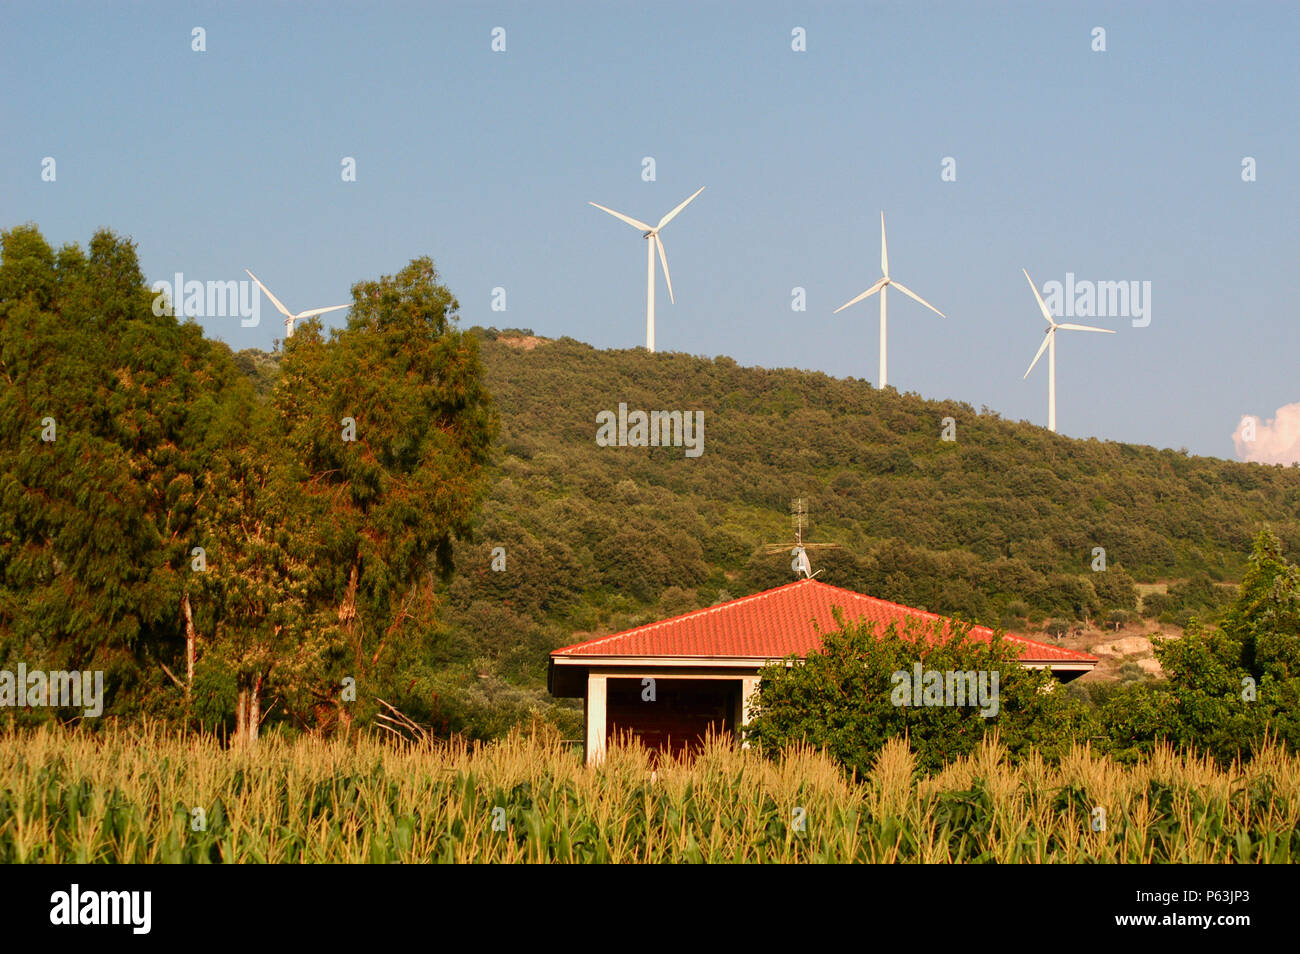 Es gibt eine ziemlich große Anzahl von Windenergieanlagen in den landwirtschaftlichen Gebieten im Süden Italiens im Rahmen der Entwicklung von alternativen Energiequellen. Stockfoto